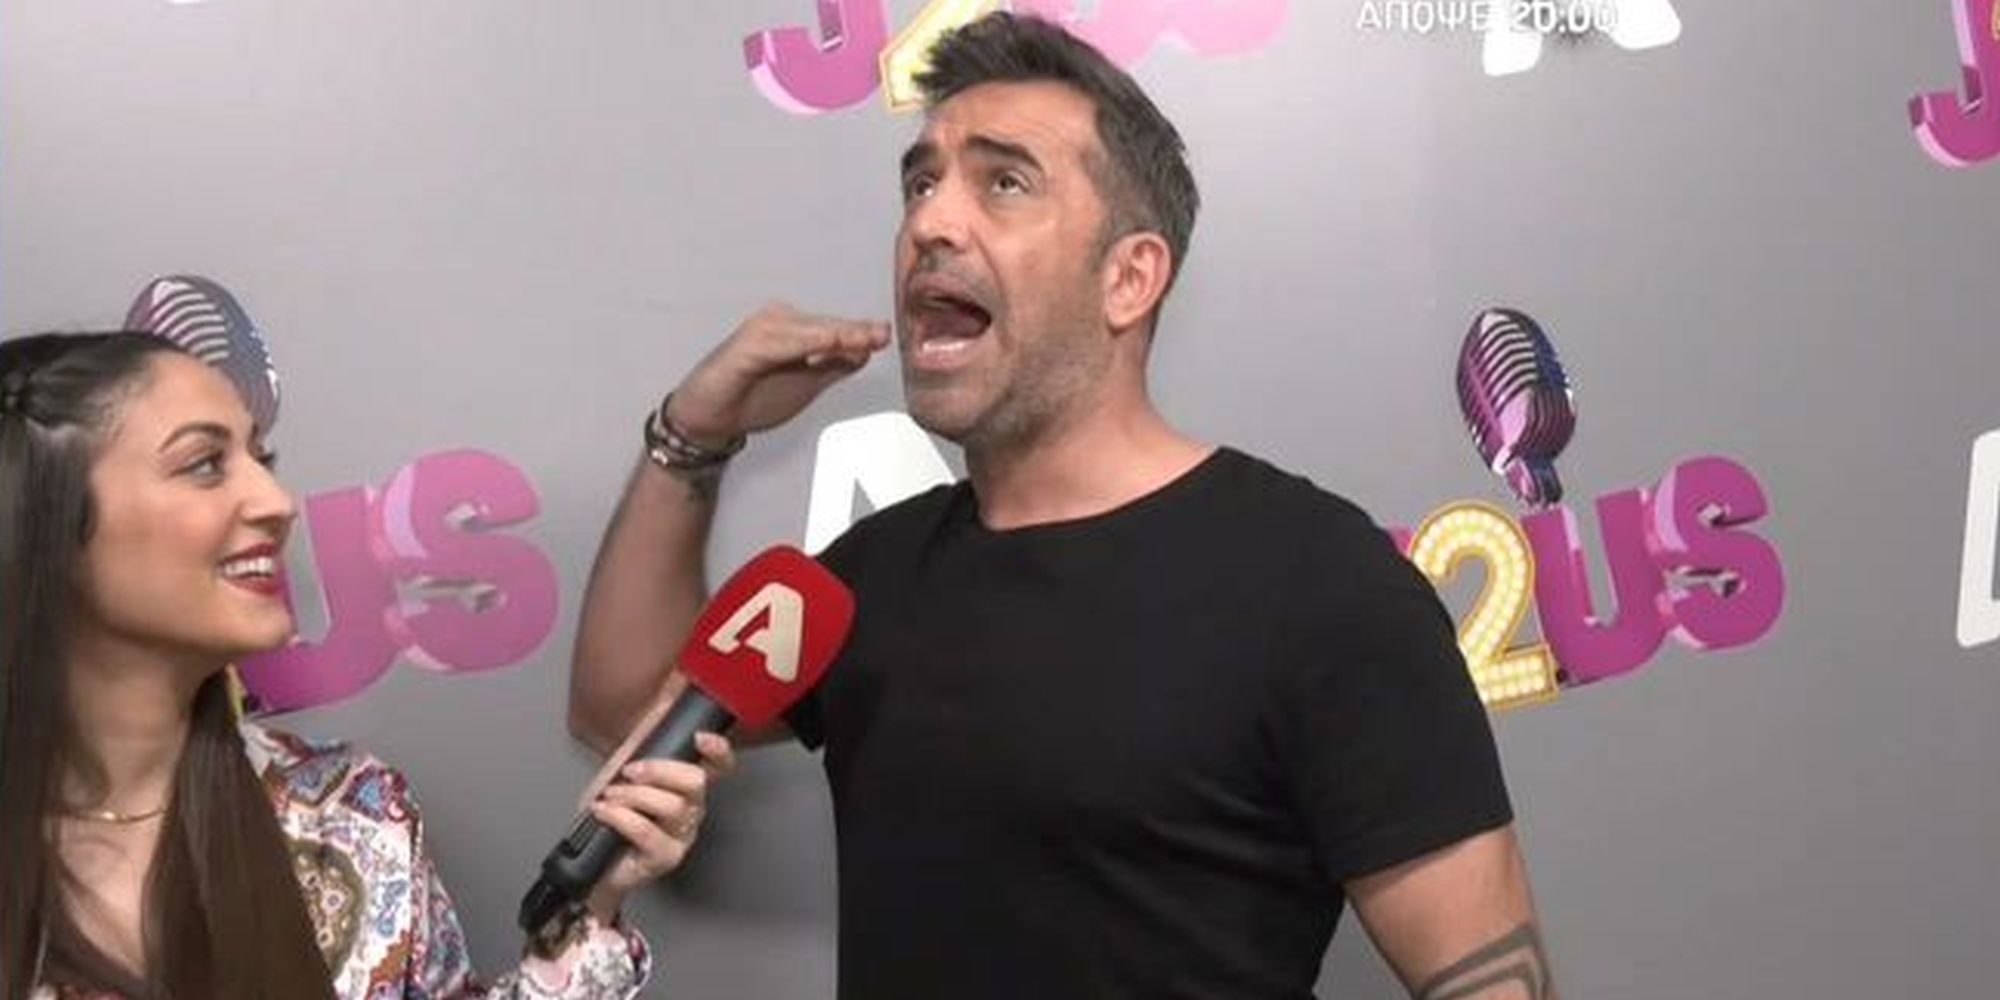 Στέφανος Κωνσταντινίδης: «Κυκλοφορώ γυμνός στο σπίτι - Αν έρθει κανείς ντελιβεράς...» (VIDEO)